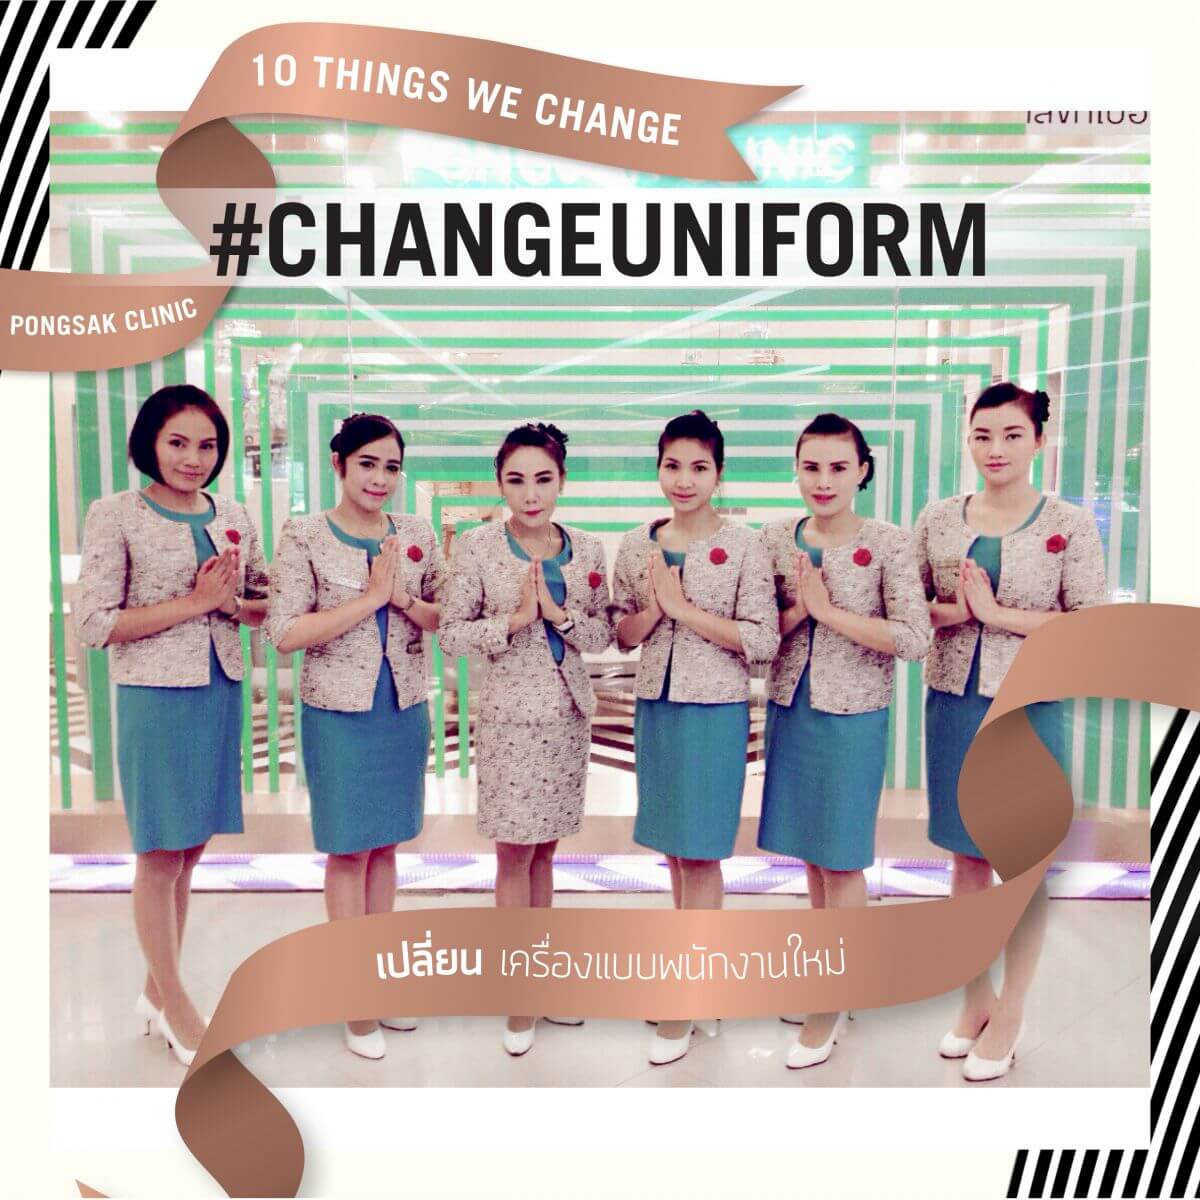 พงศ์ศักดิ์คลินิก Pongsak Clinic -Pongsak Change uniform